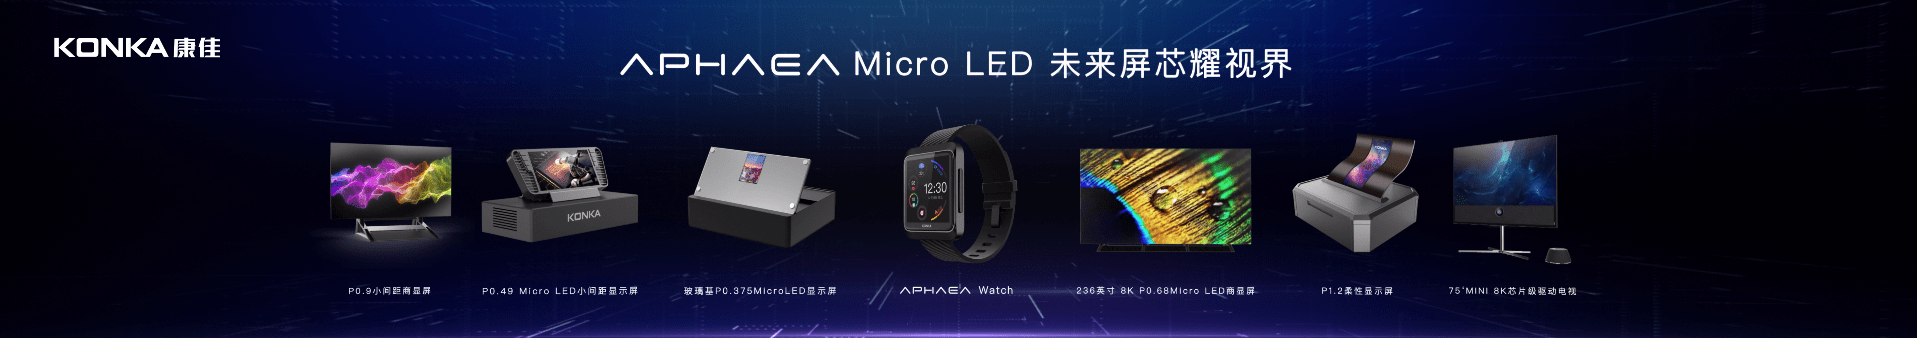 创新|2020重庆Micro LED产业创新论坛开启 康佳APHAEAMicro LED未来屏产品矩阵展出